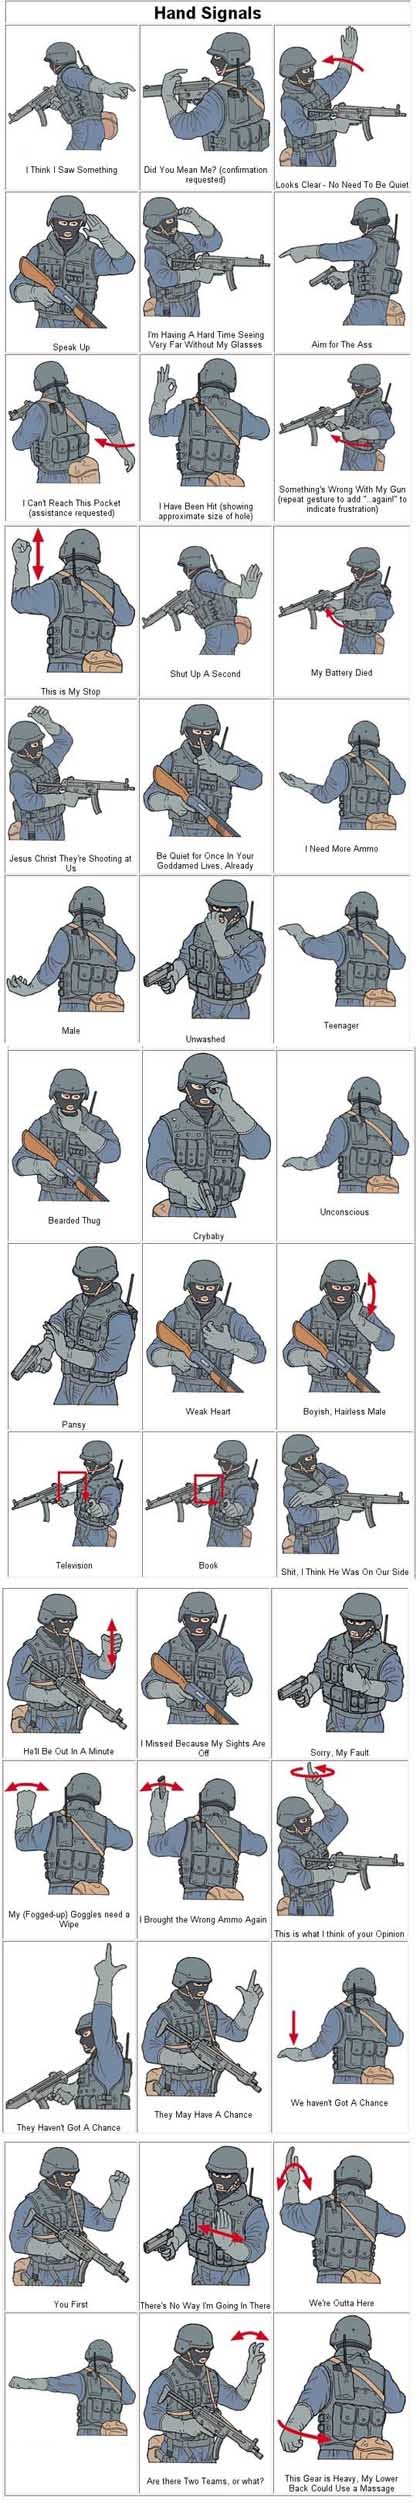 SWAT hand signals